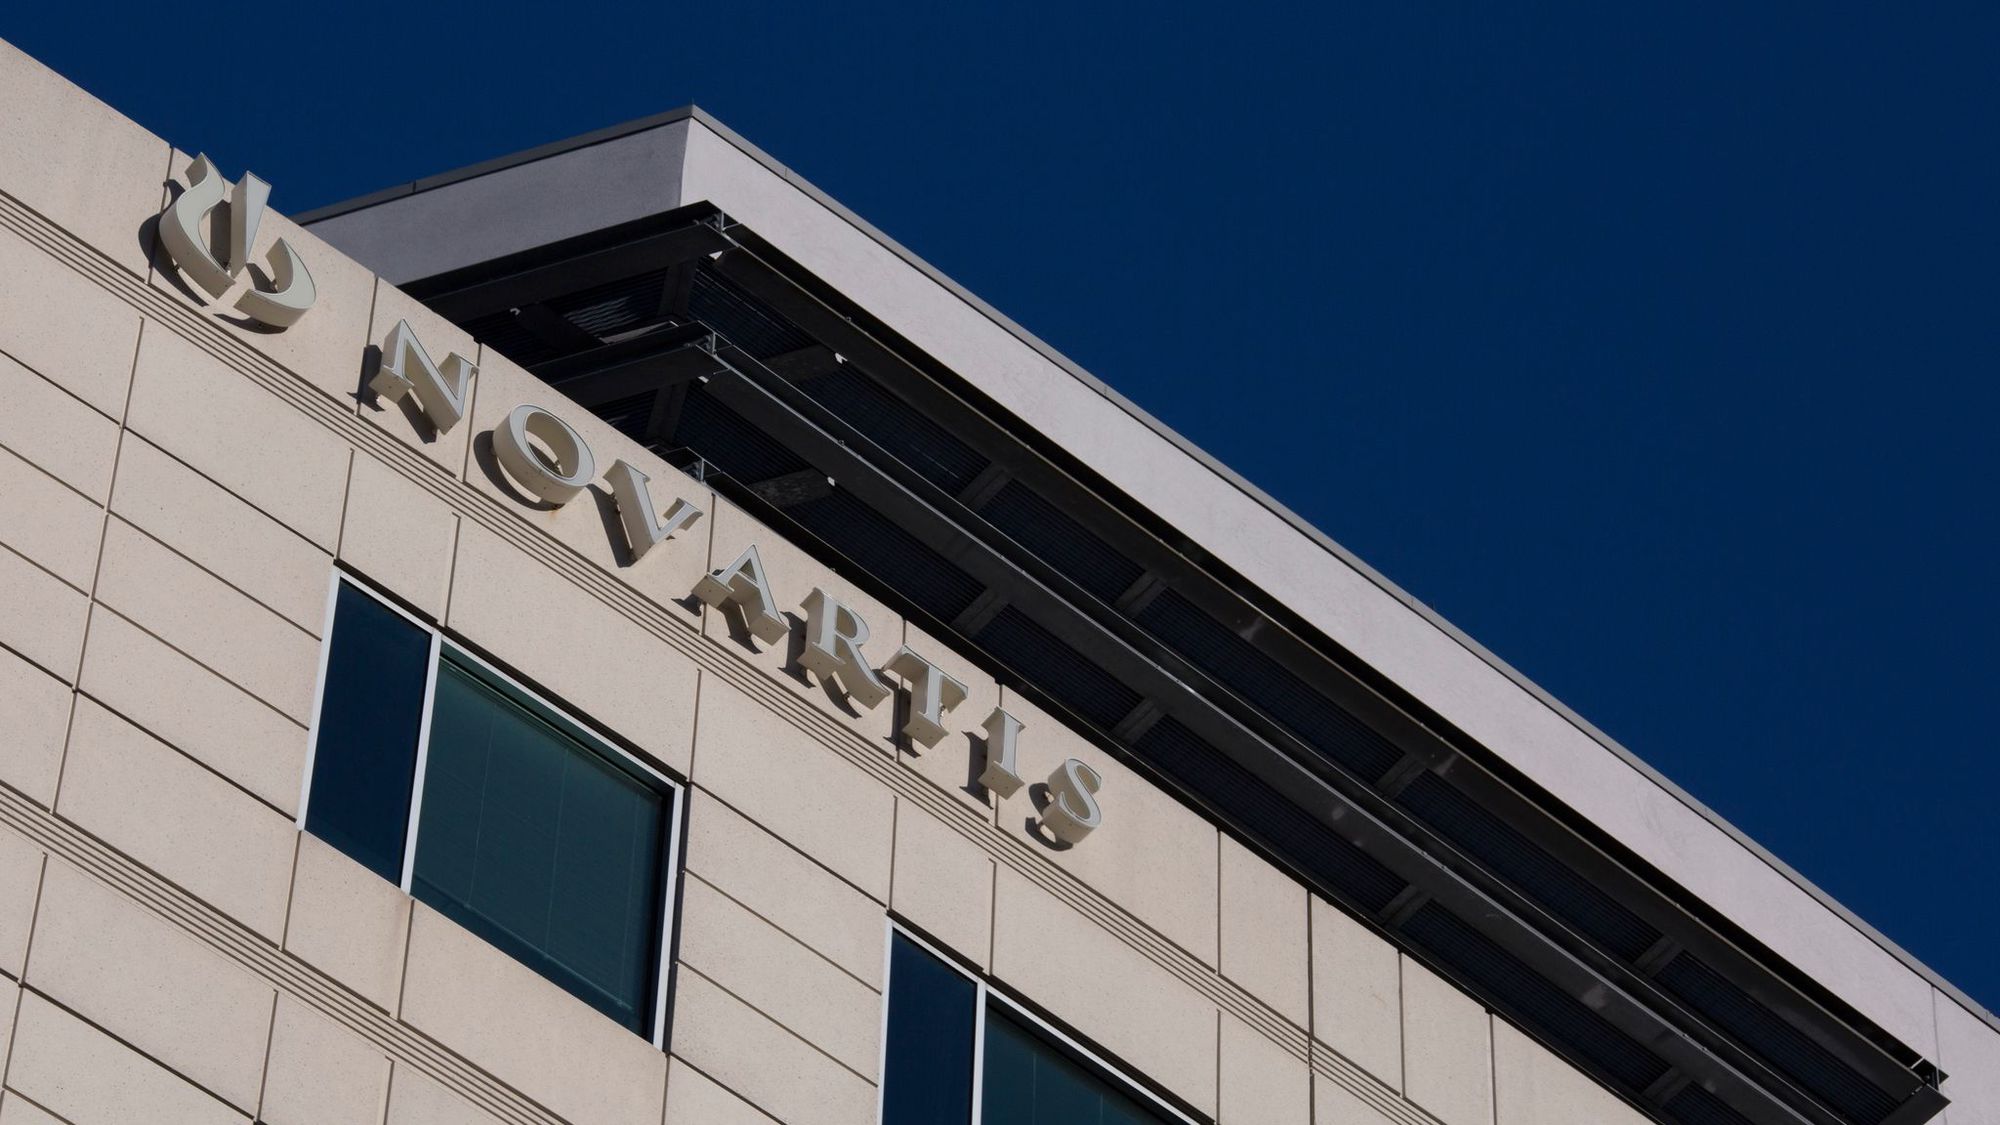 Grèce: l'enquête Novartis vire au scandale politico-financier